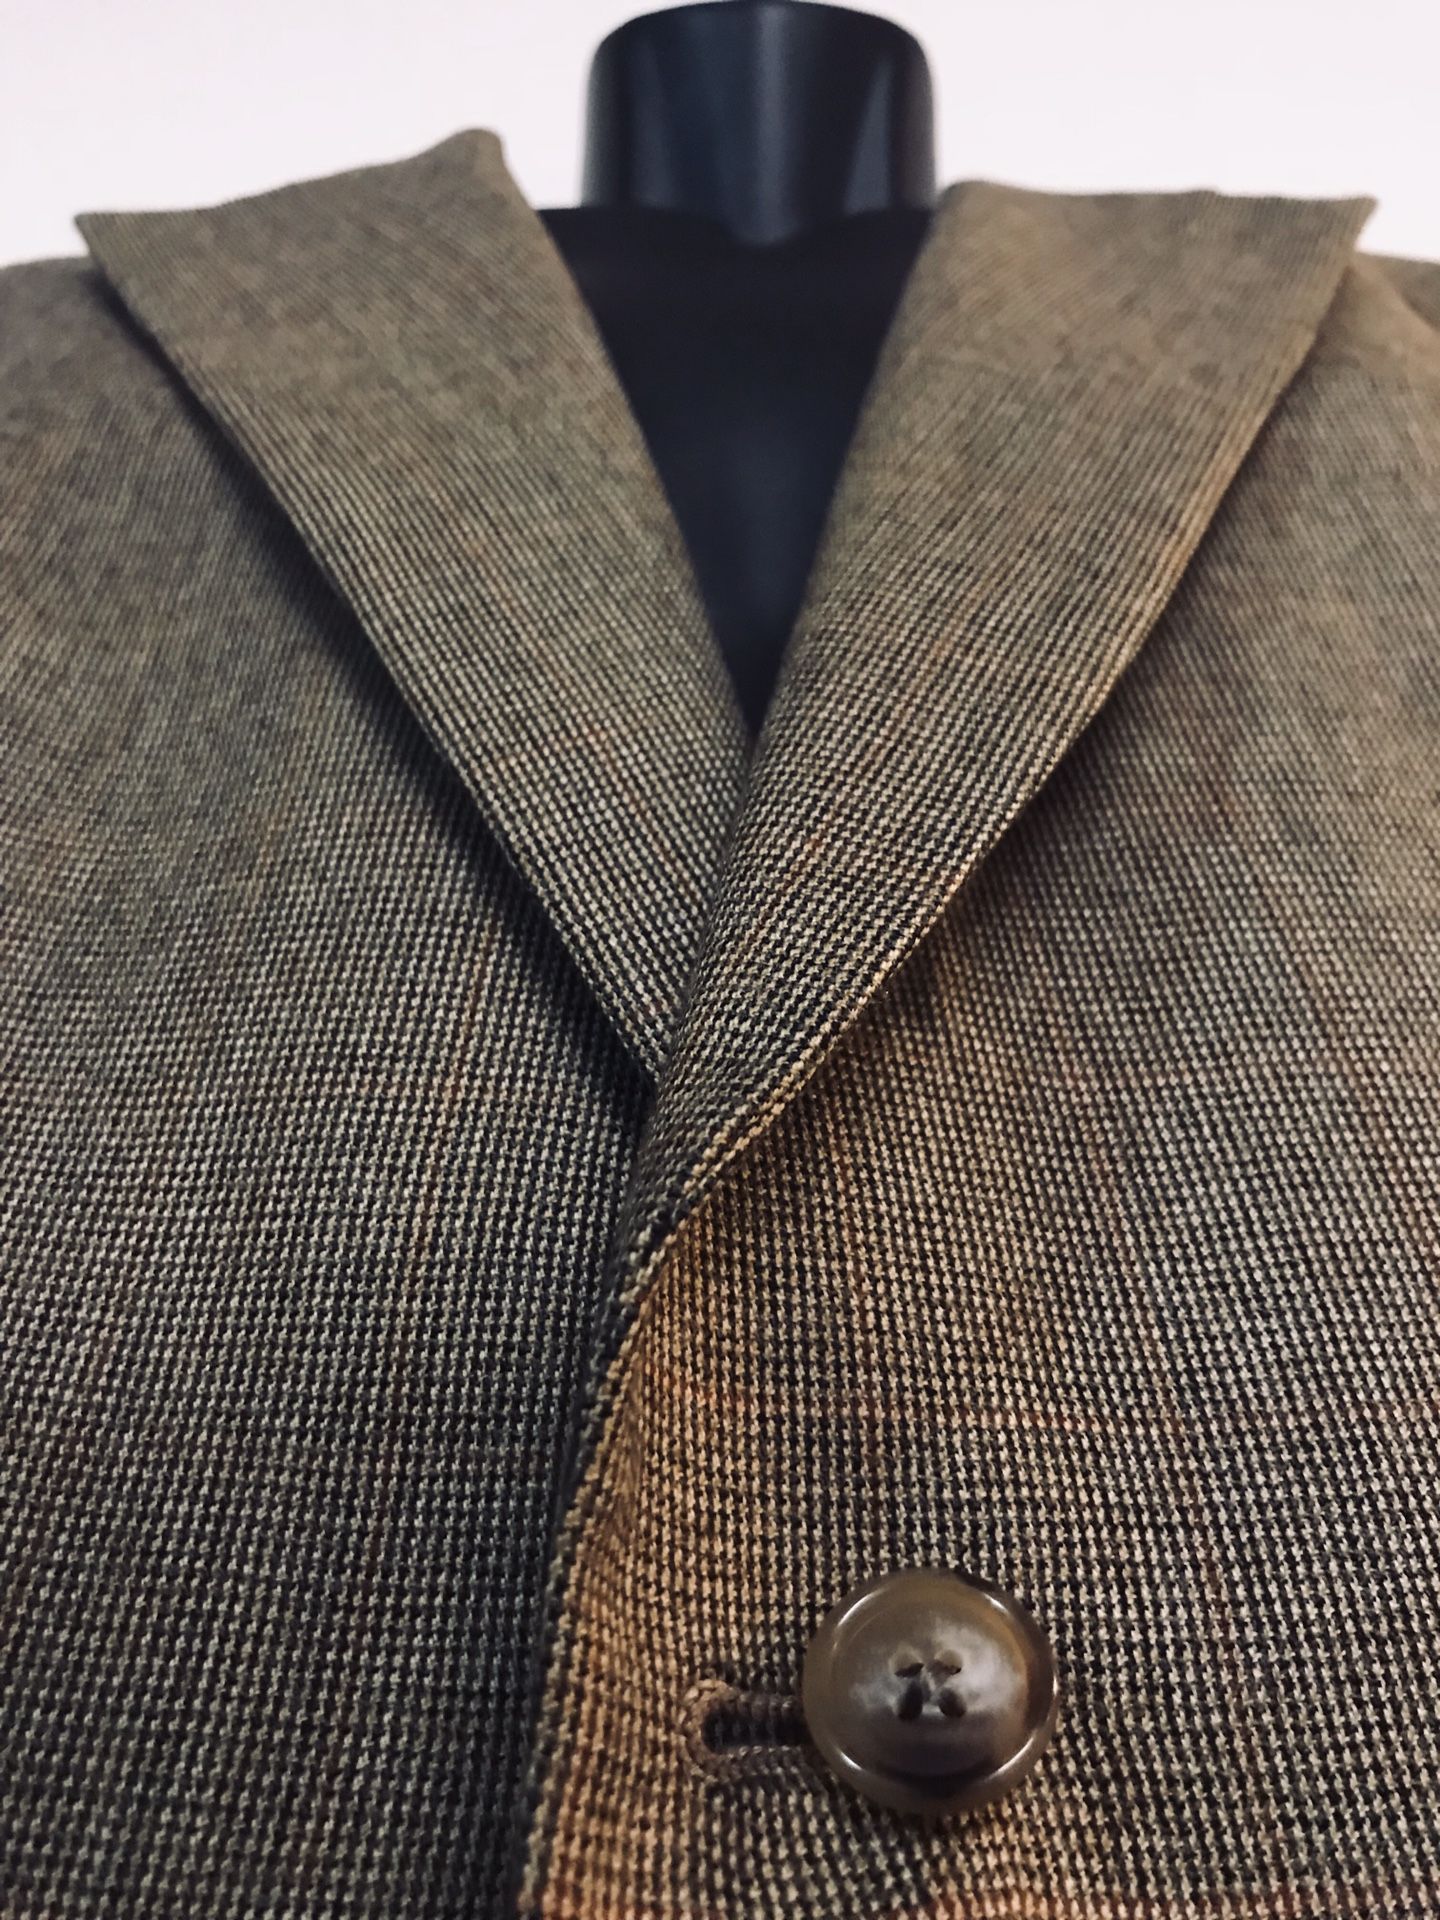 Burberry Tweed Wool Coat - 40R